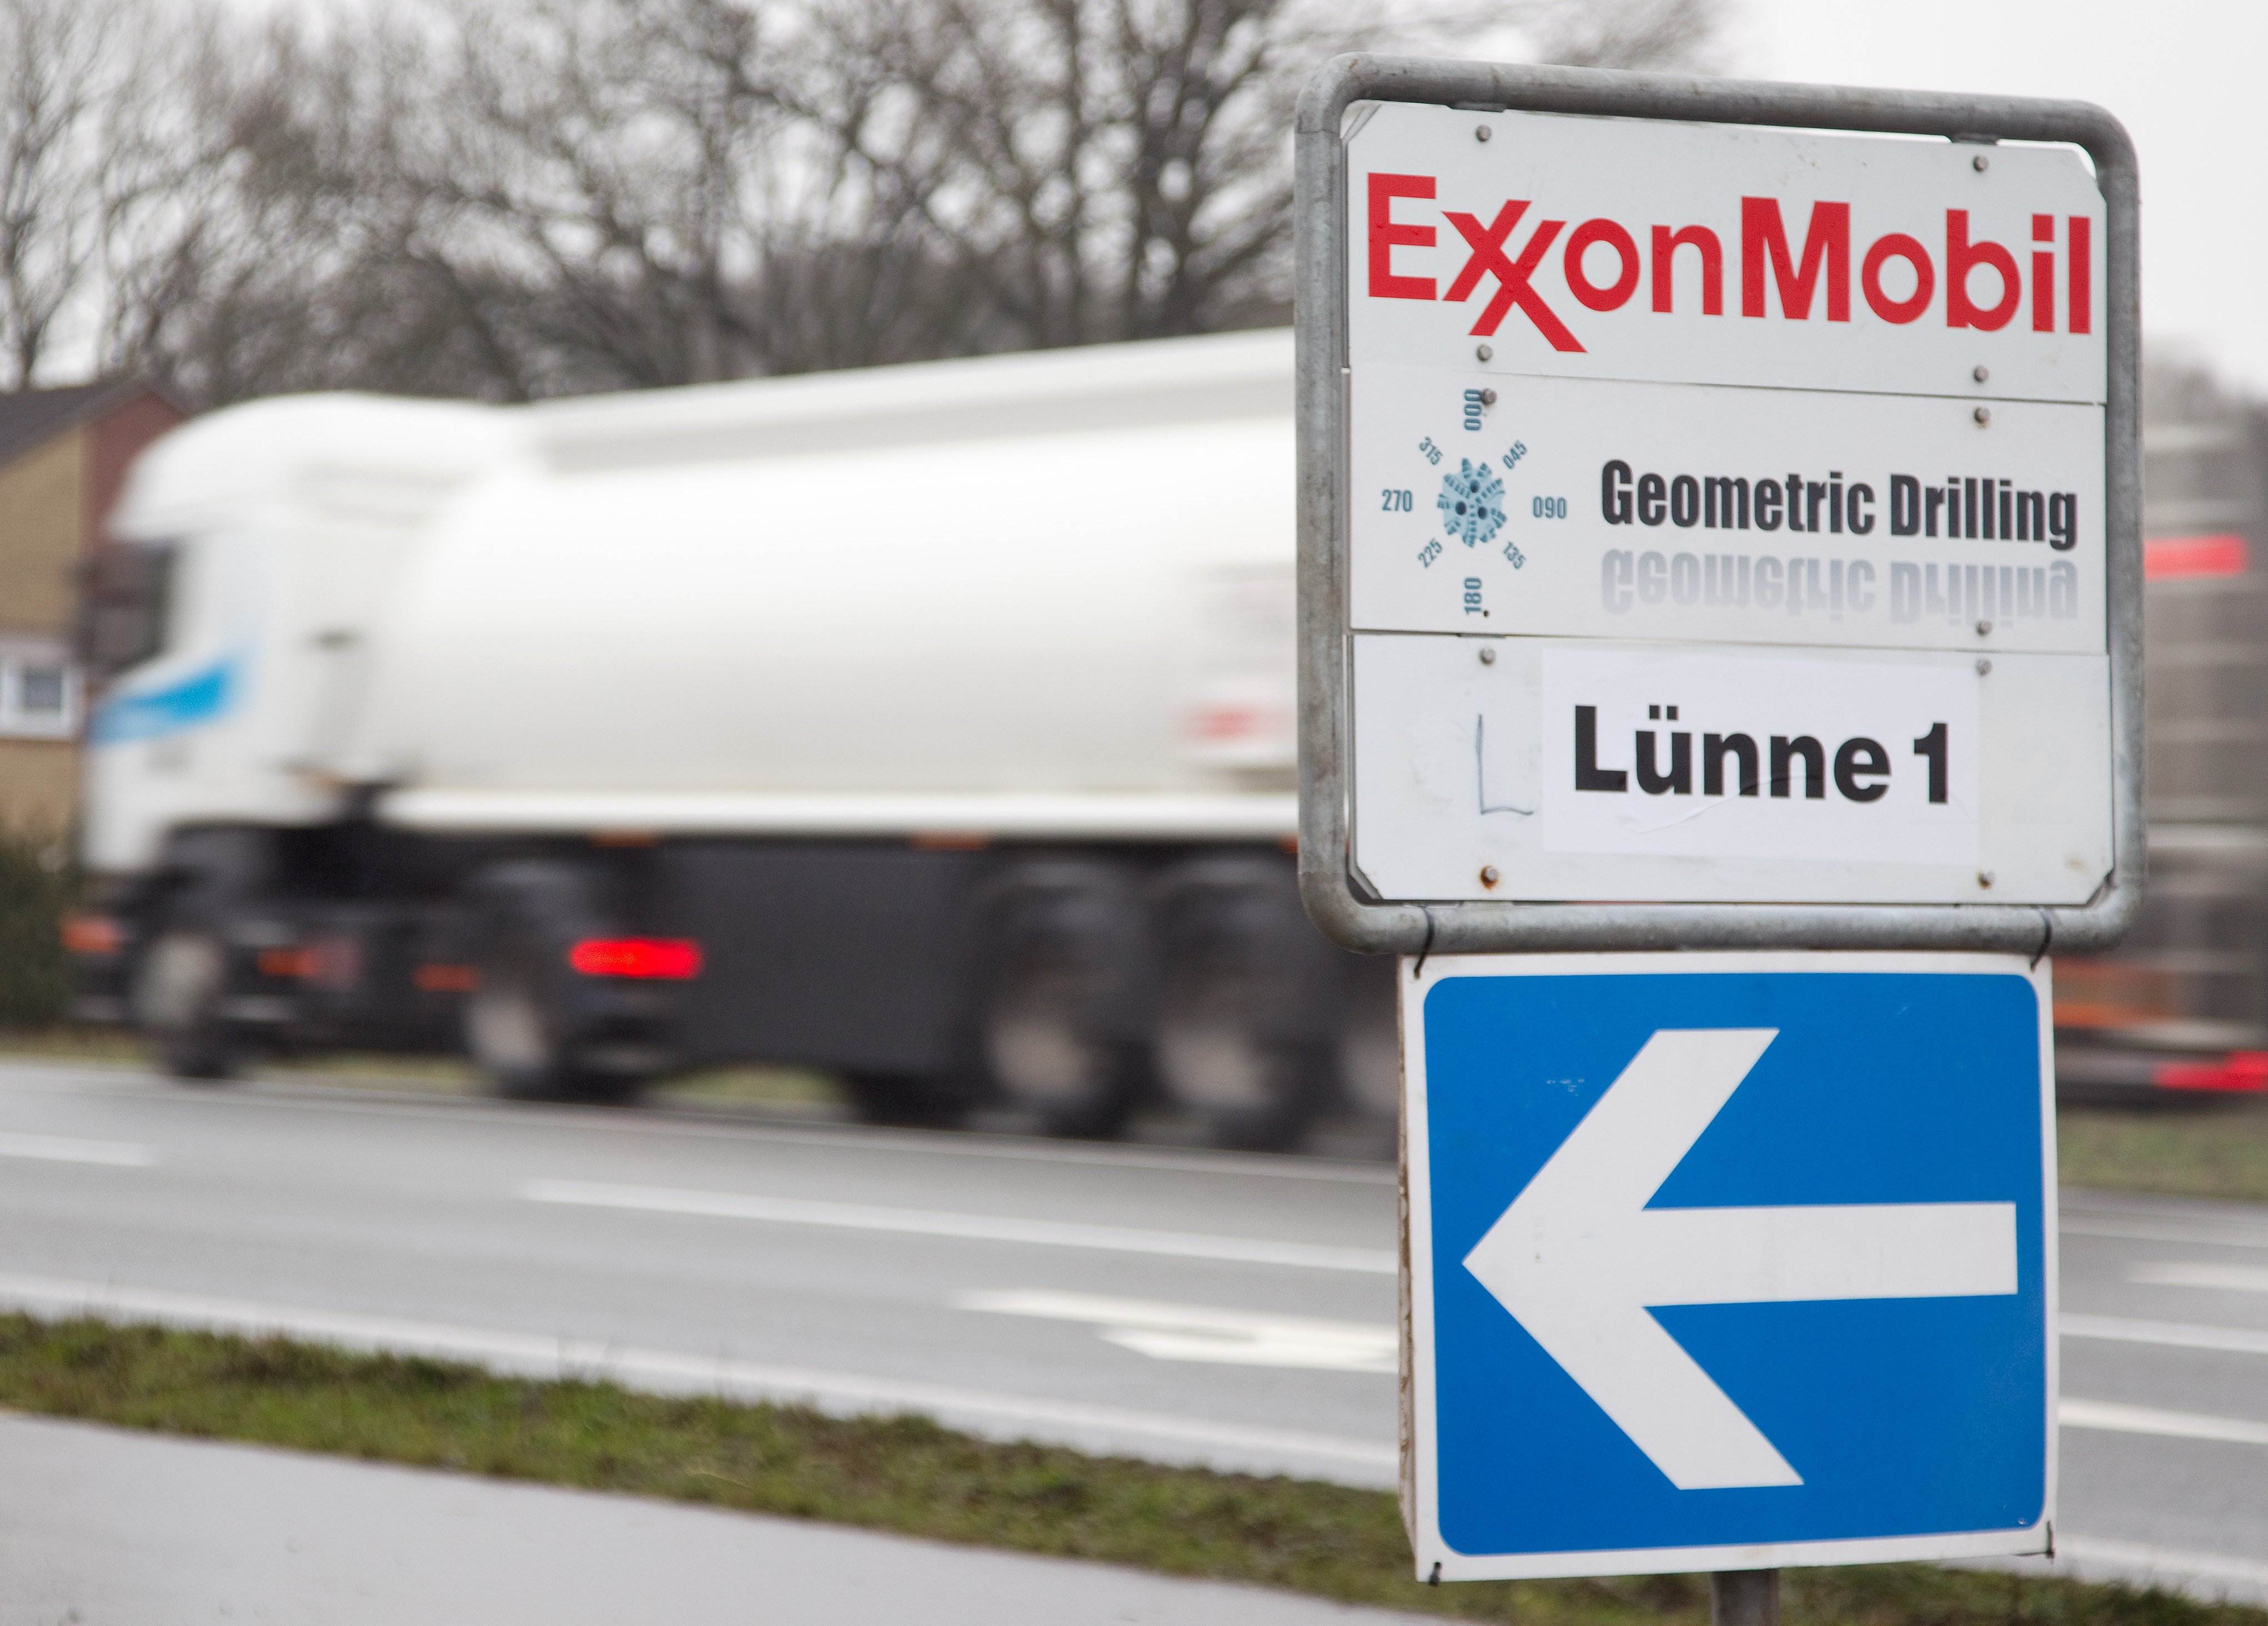 Exxon ultima la compra de la petrolera Pioneer por 57.000 millones de euros